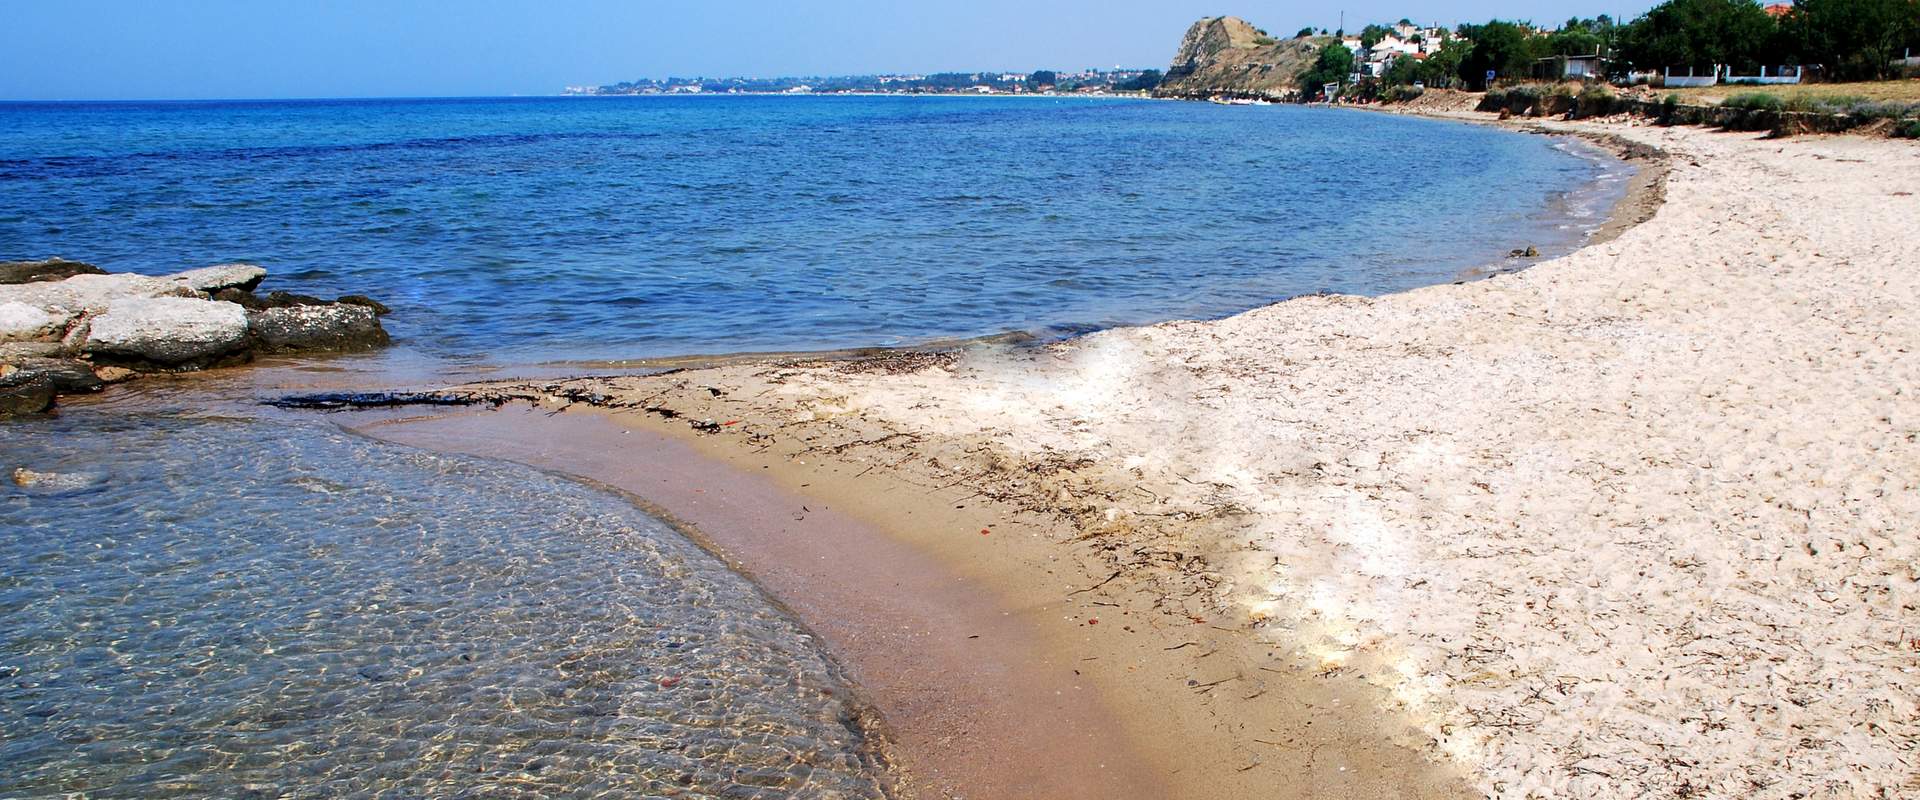 Delfinia beach, Halkidiki, Greece